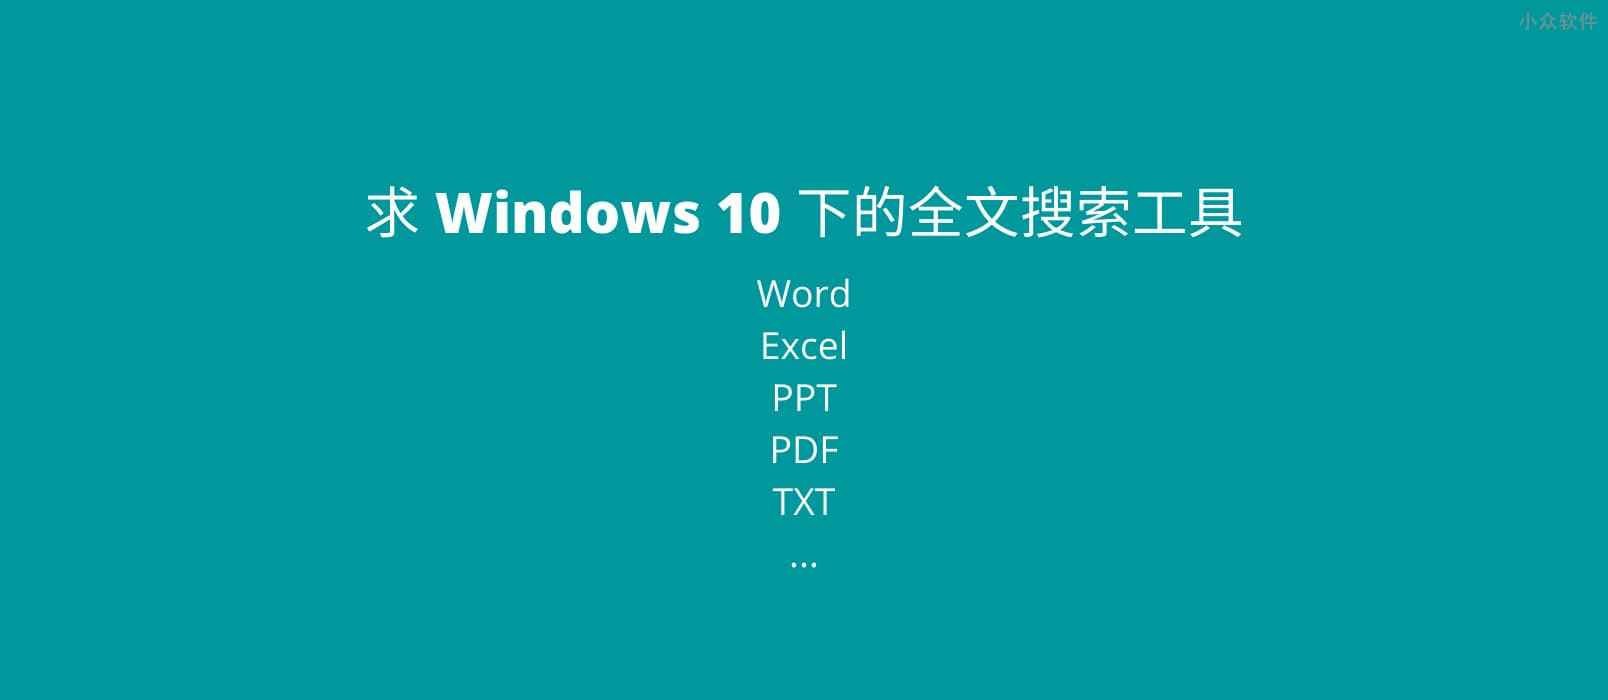 AnyTXT Searcher – Windows 10 下的全文搜索工具